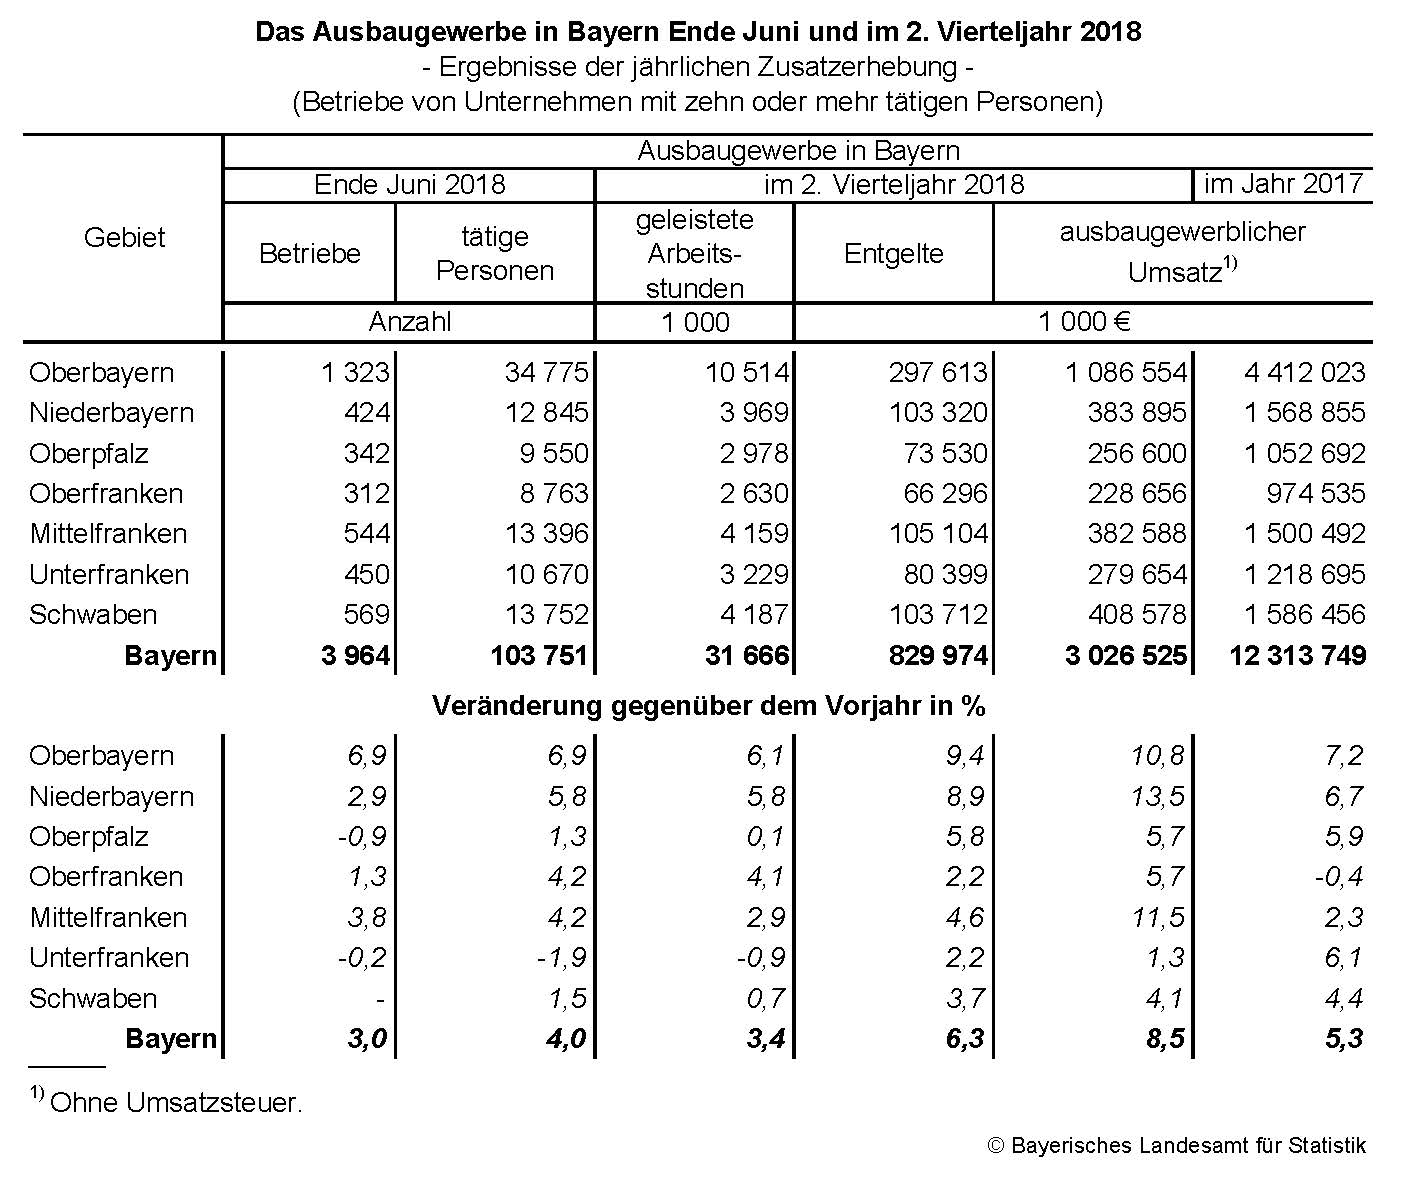 Das Ausbaugewerbe in Bayern Ende Juni und im 2. Vierteljahr 2018